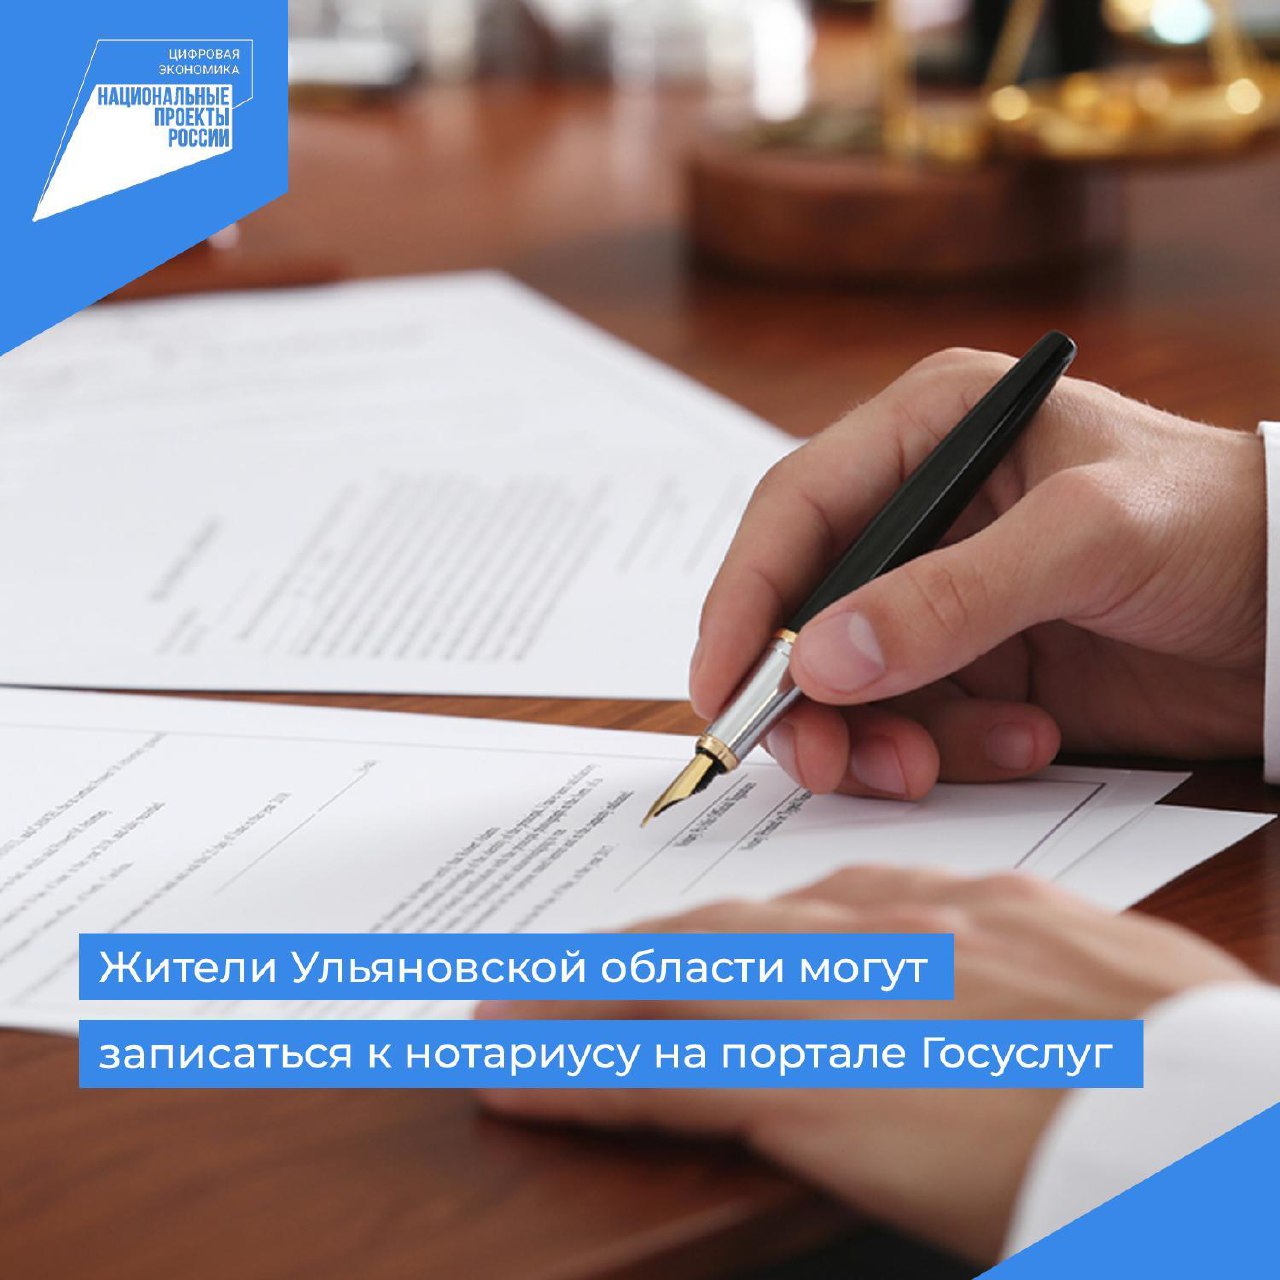 Жители Ульяновской области могут записаться к нотариусу на портале Госуслуг.